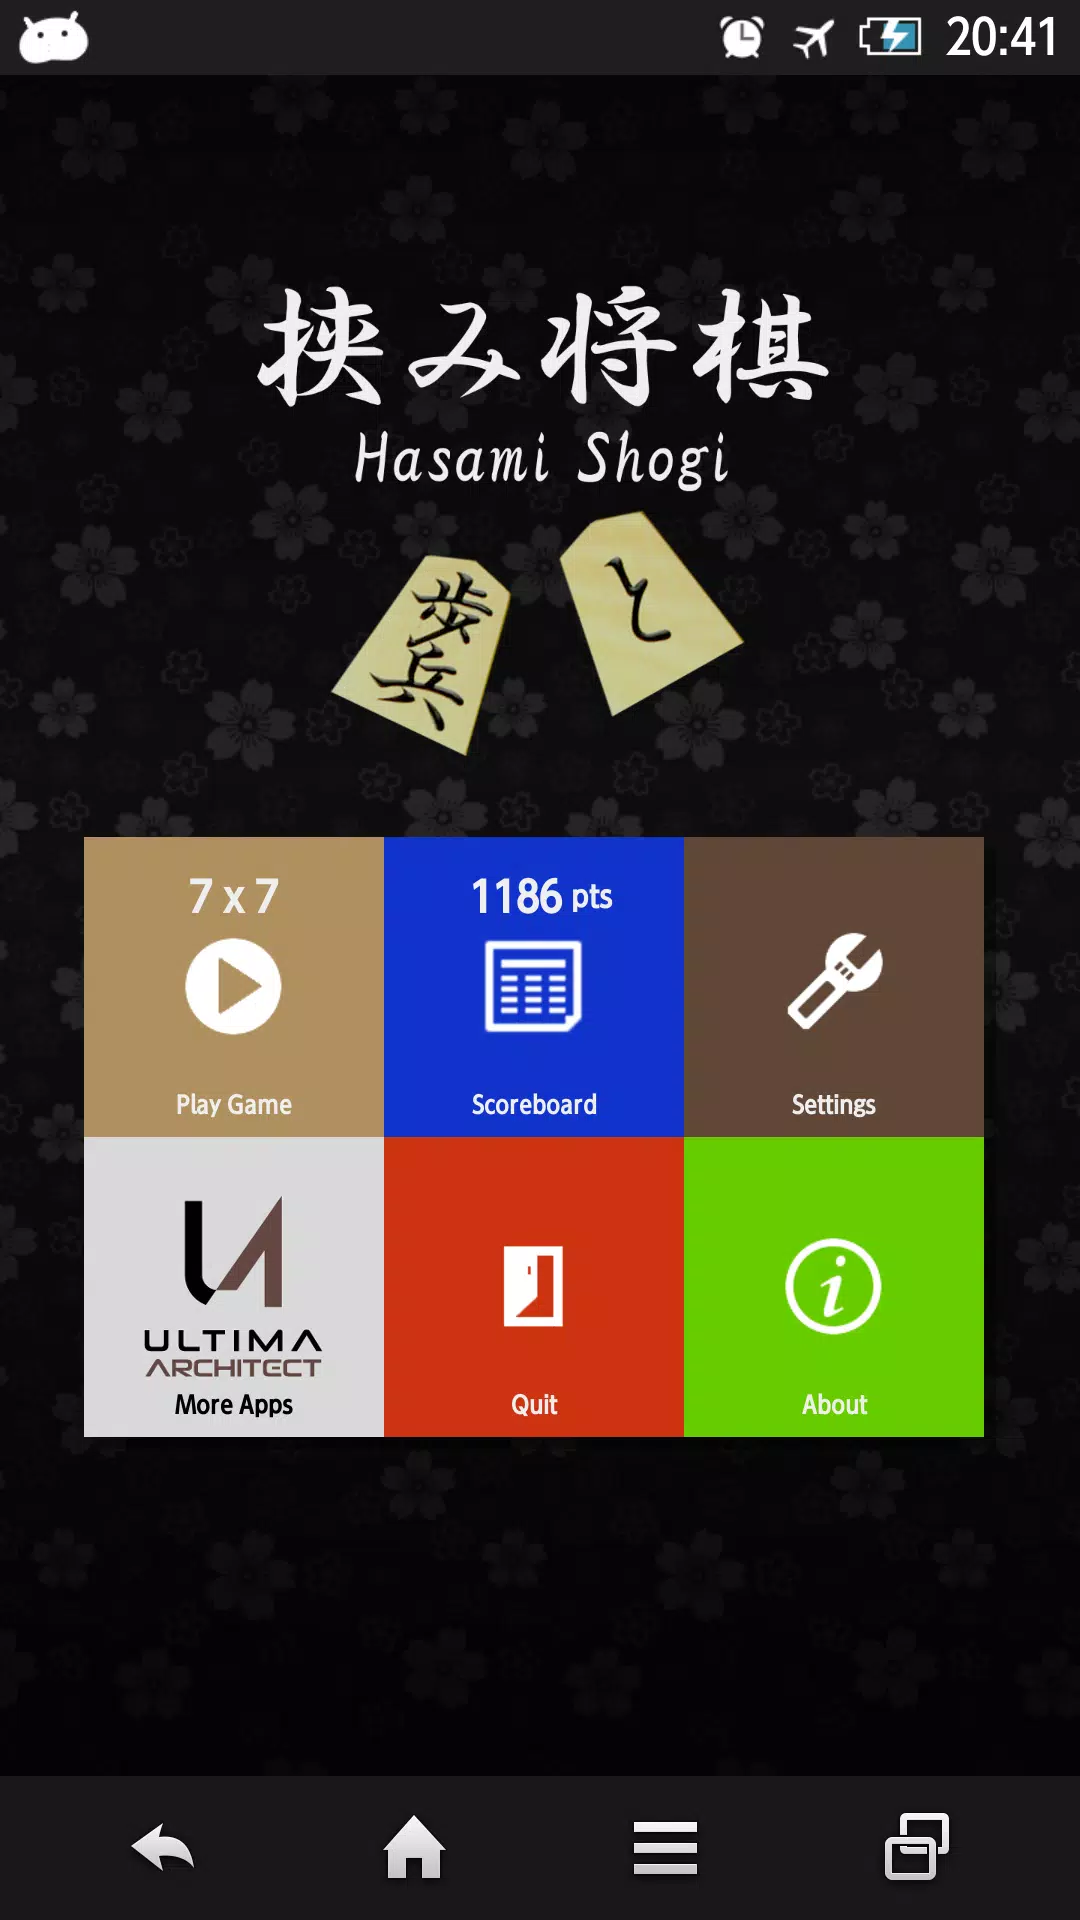 Download Hasami Shogi APK v1.0.10 For Android